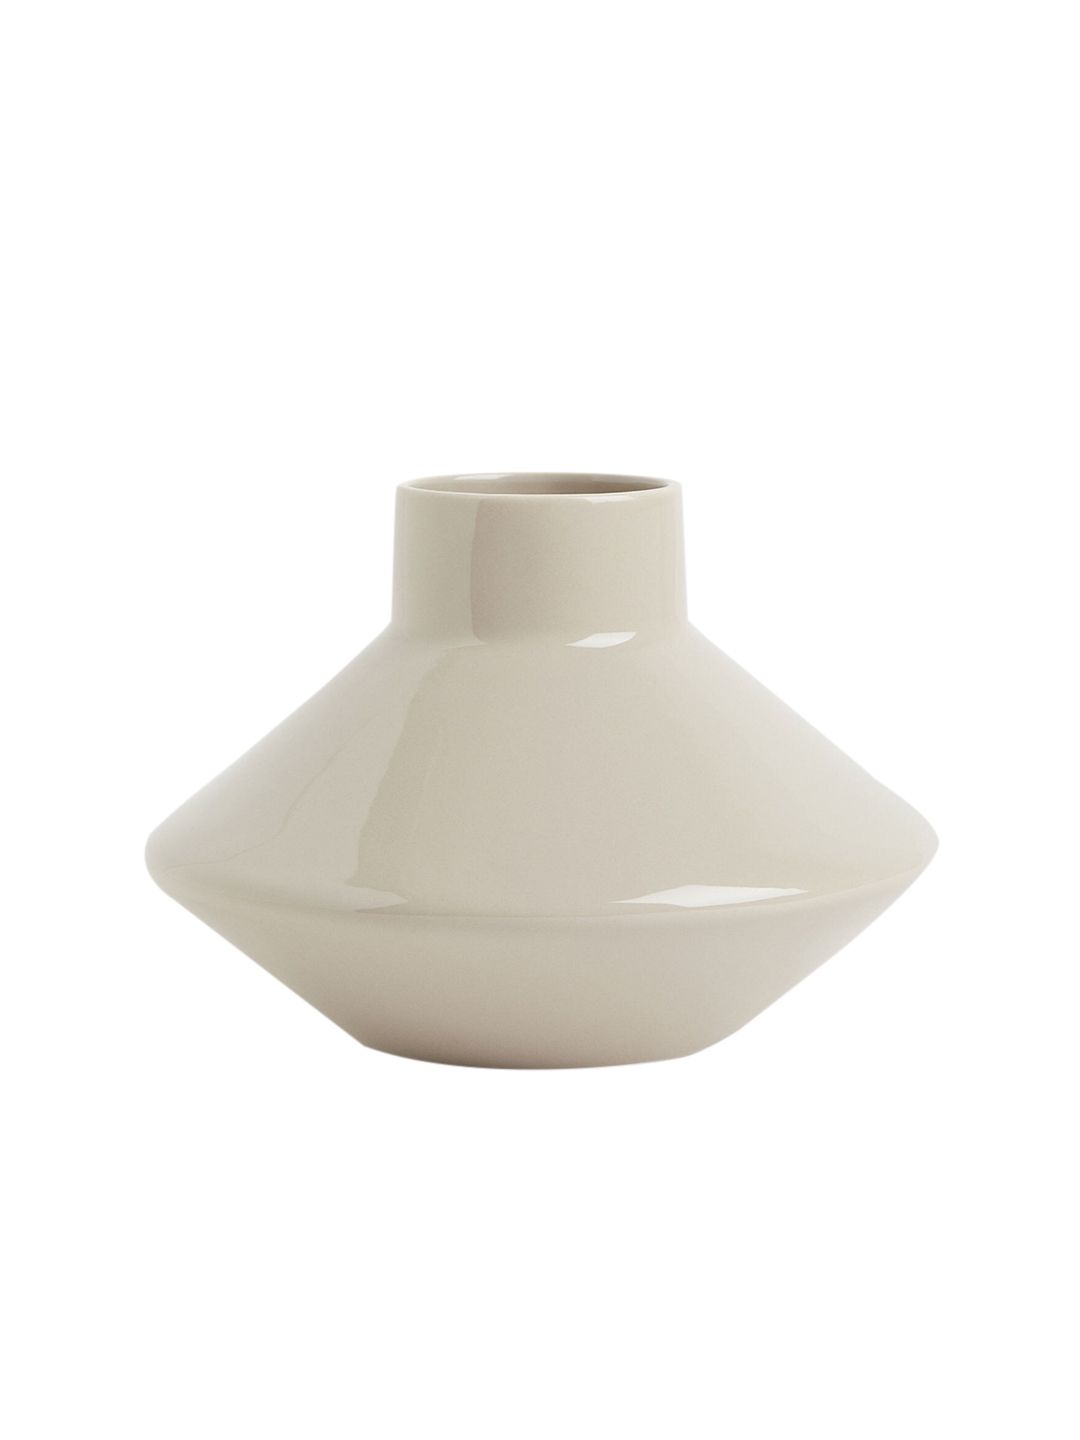 H&M Stoneware Vase Price in India